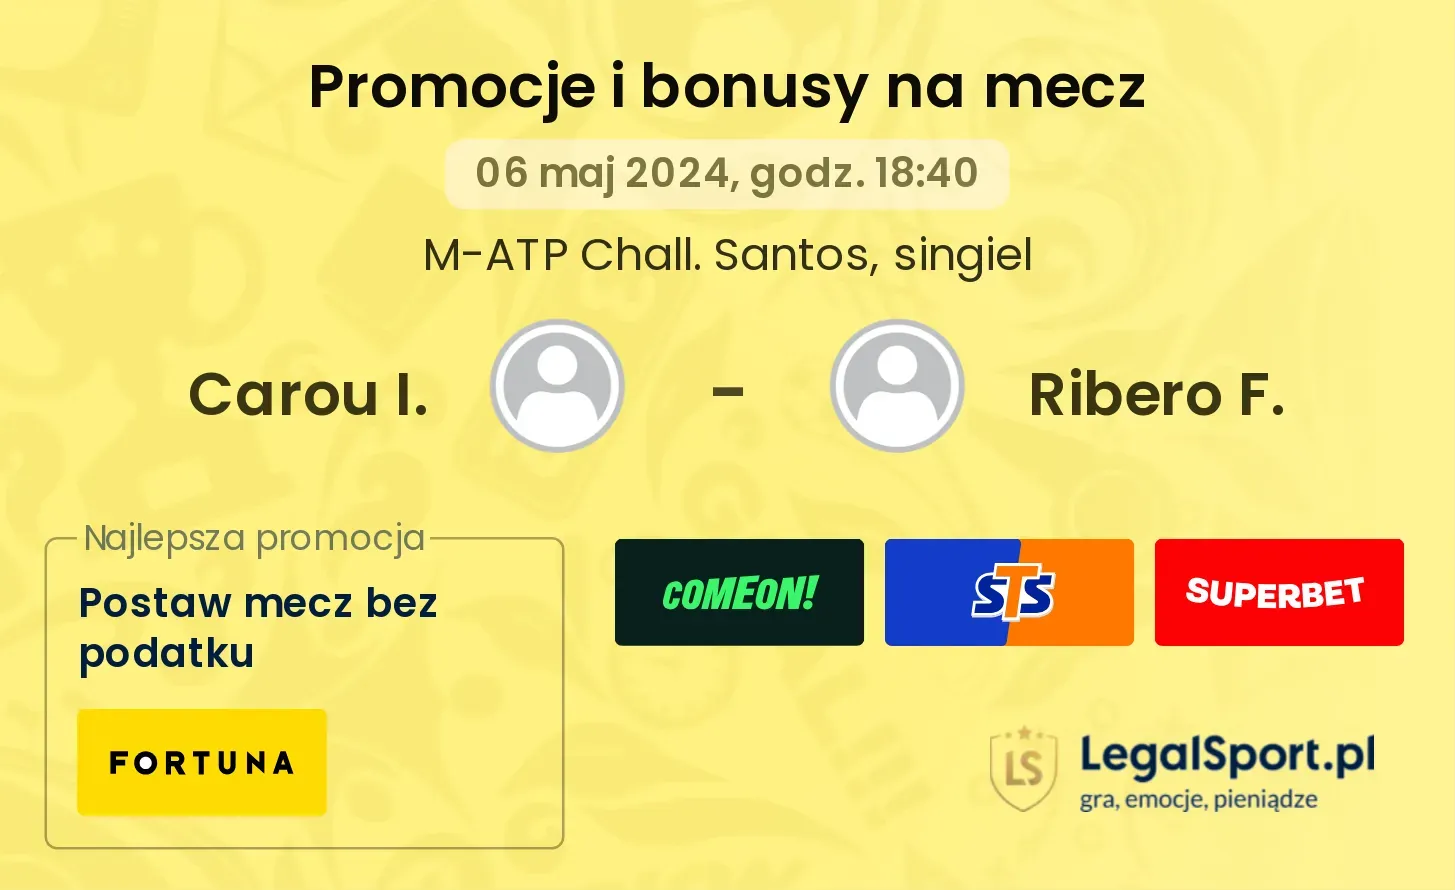 Carou I. - Ribero F. promocje bonusy na mecz